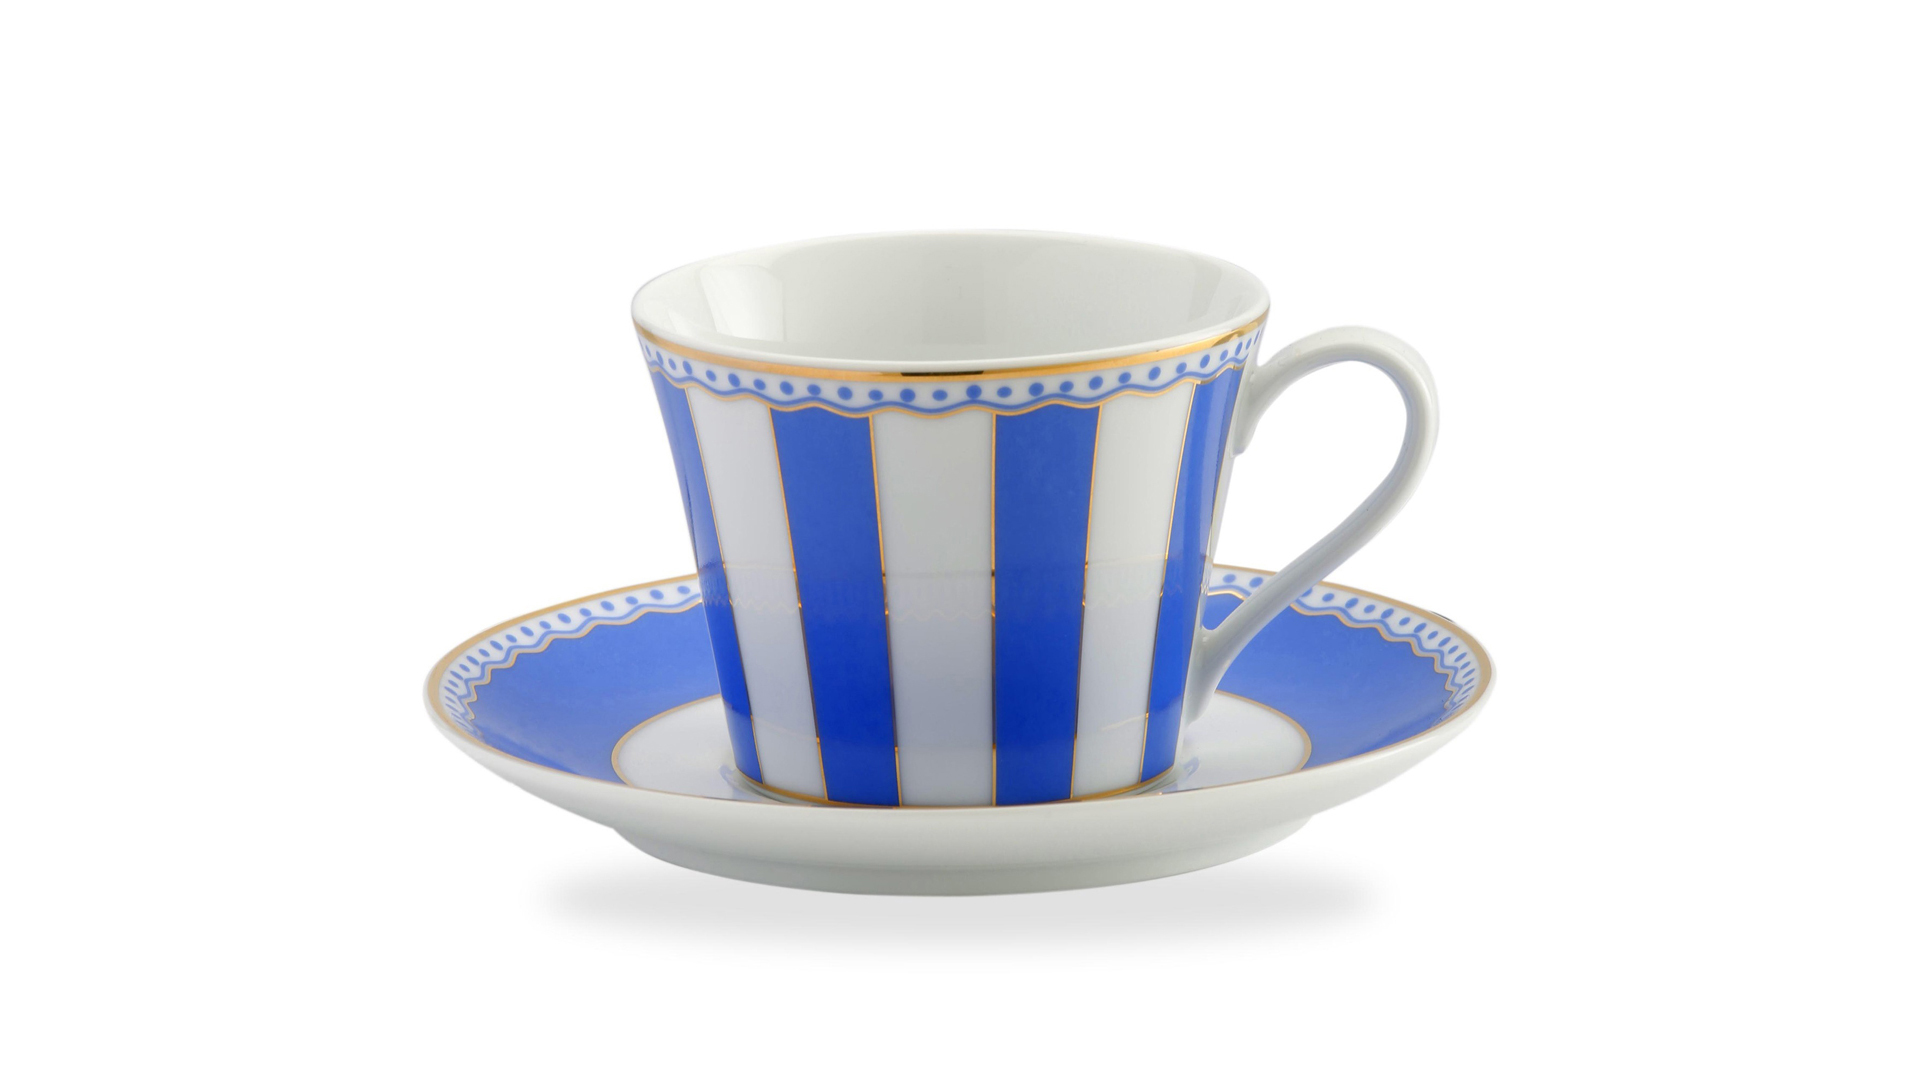 Чашка чайная с блюдцем Noritake Карнавал 240 мл, синяя полоска, п/к